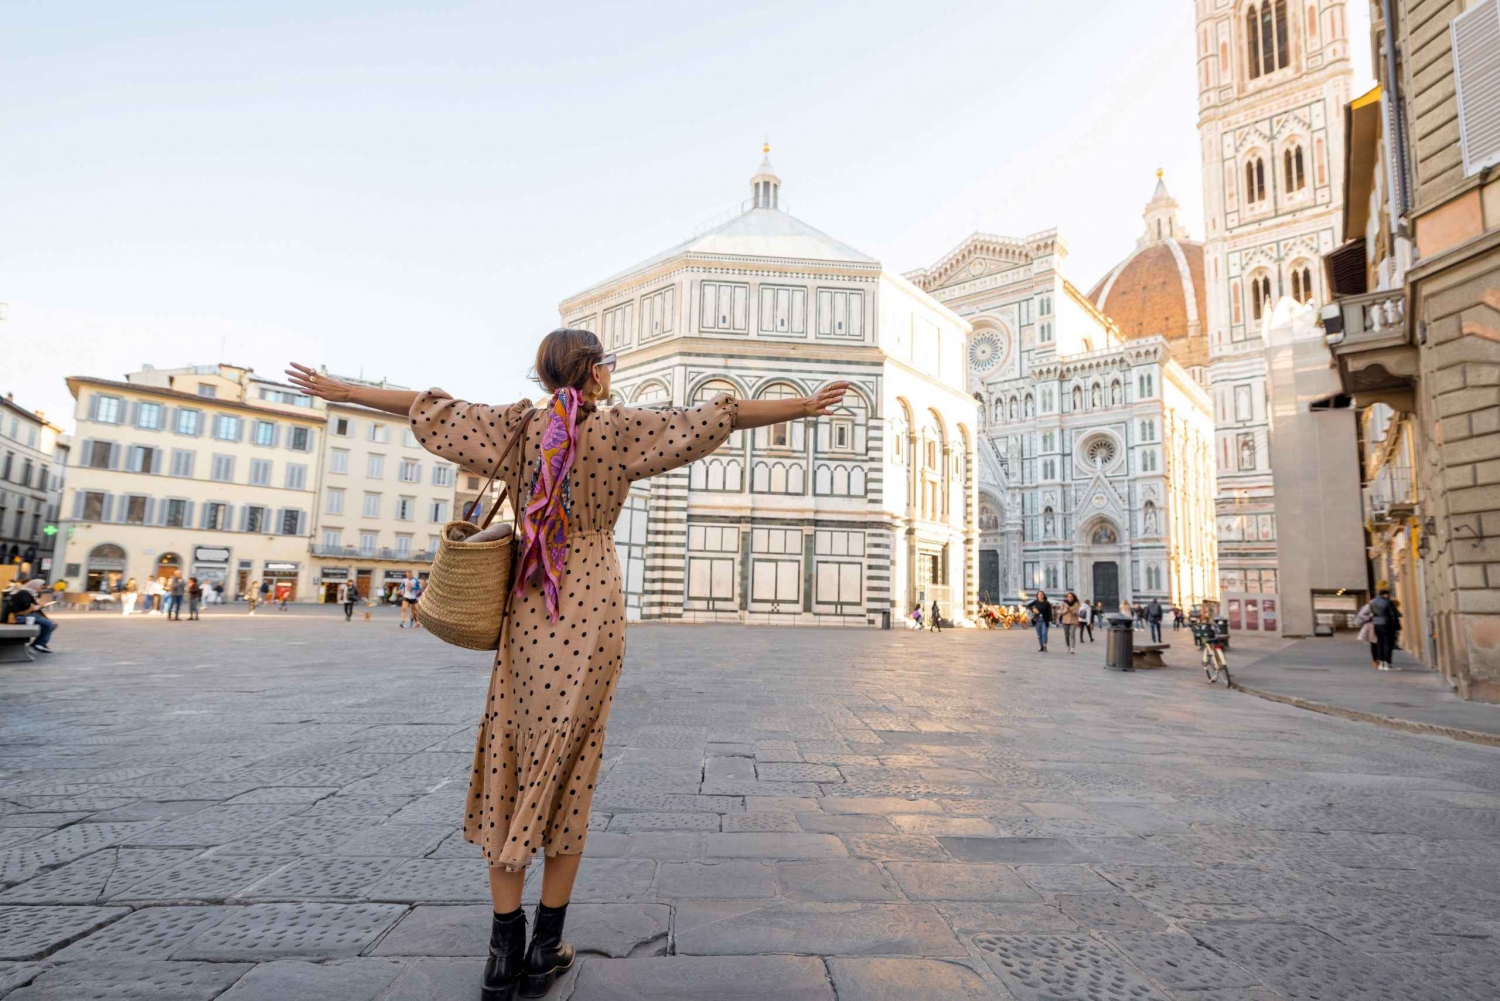 Firenze: Incredibile servizio fotografico al Duomo!